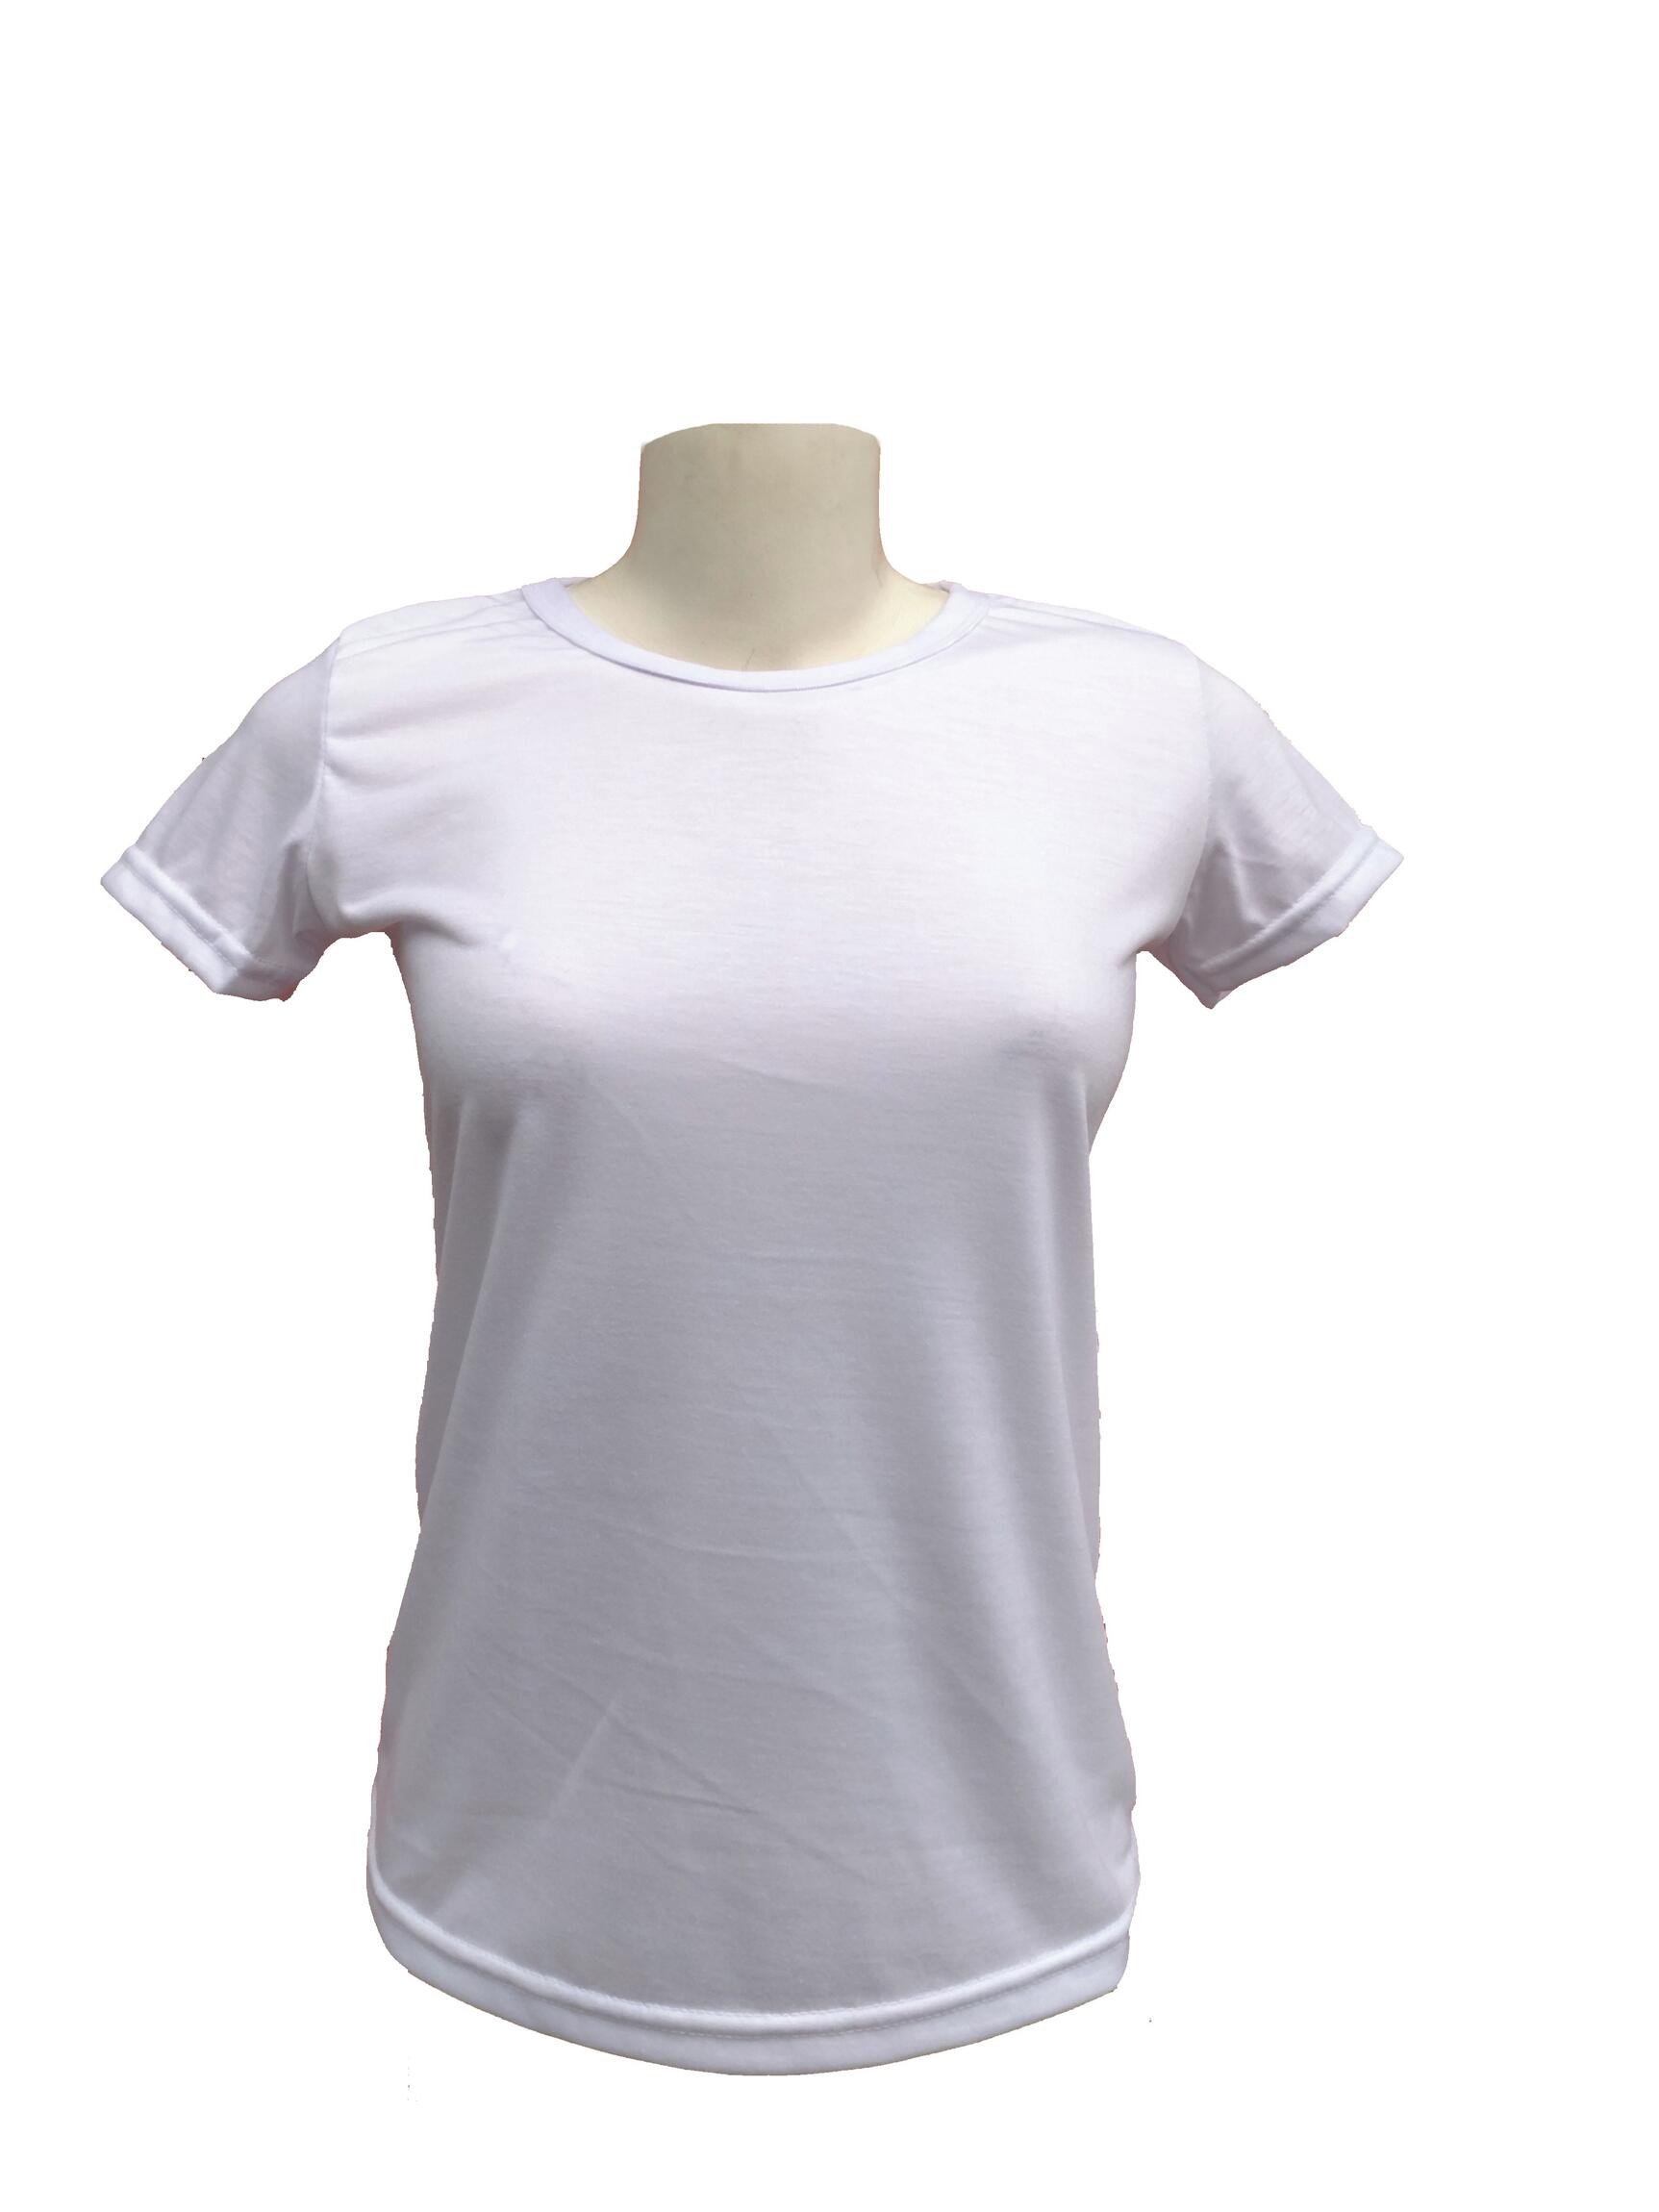 Camiseta Branca para Sublimação Malha 100% Poliéster